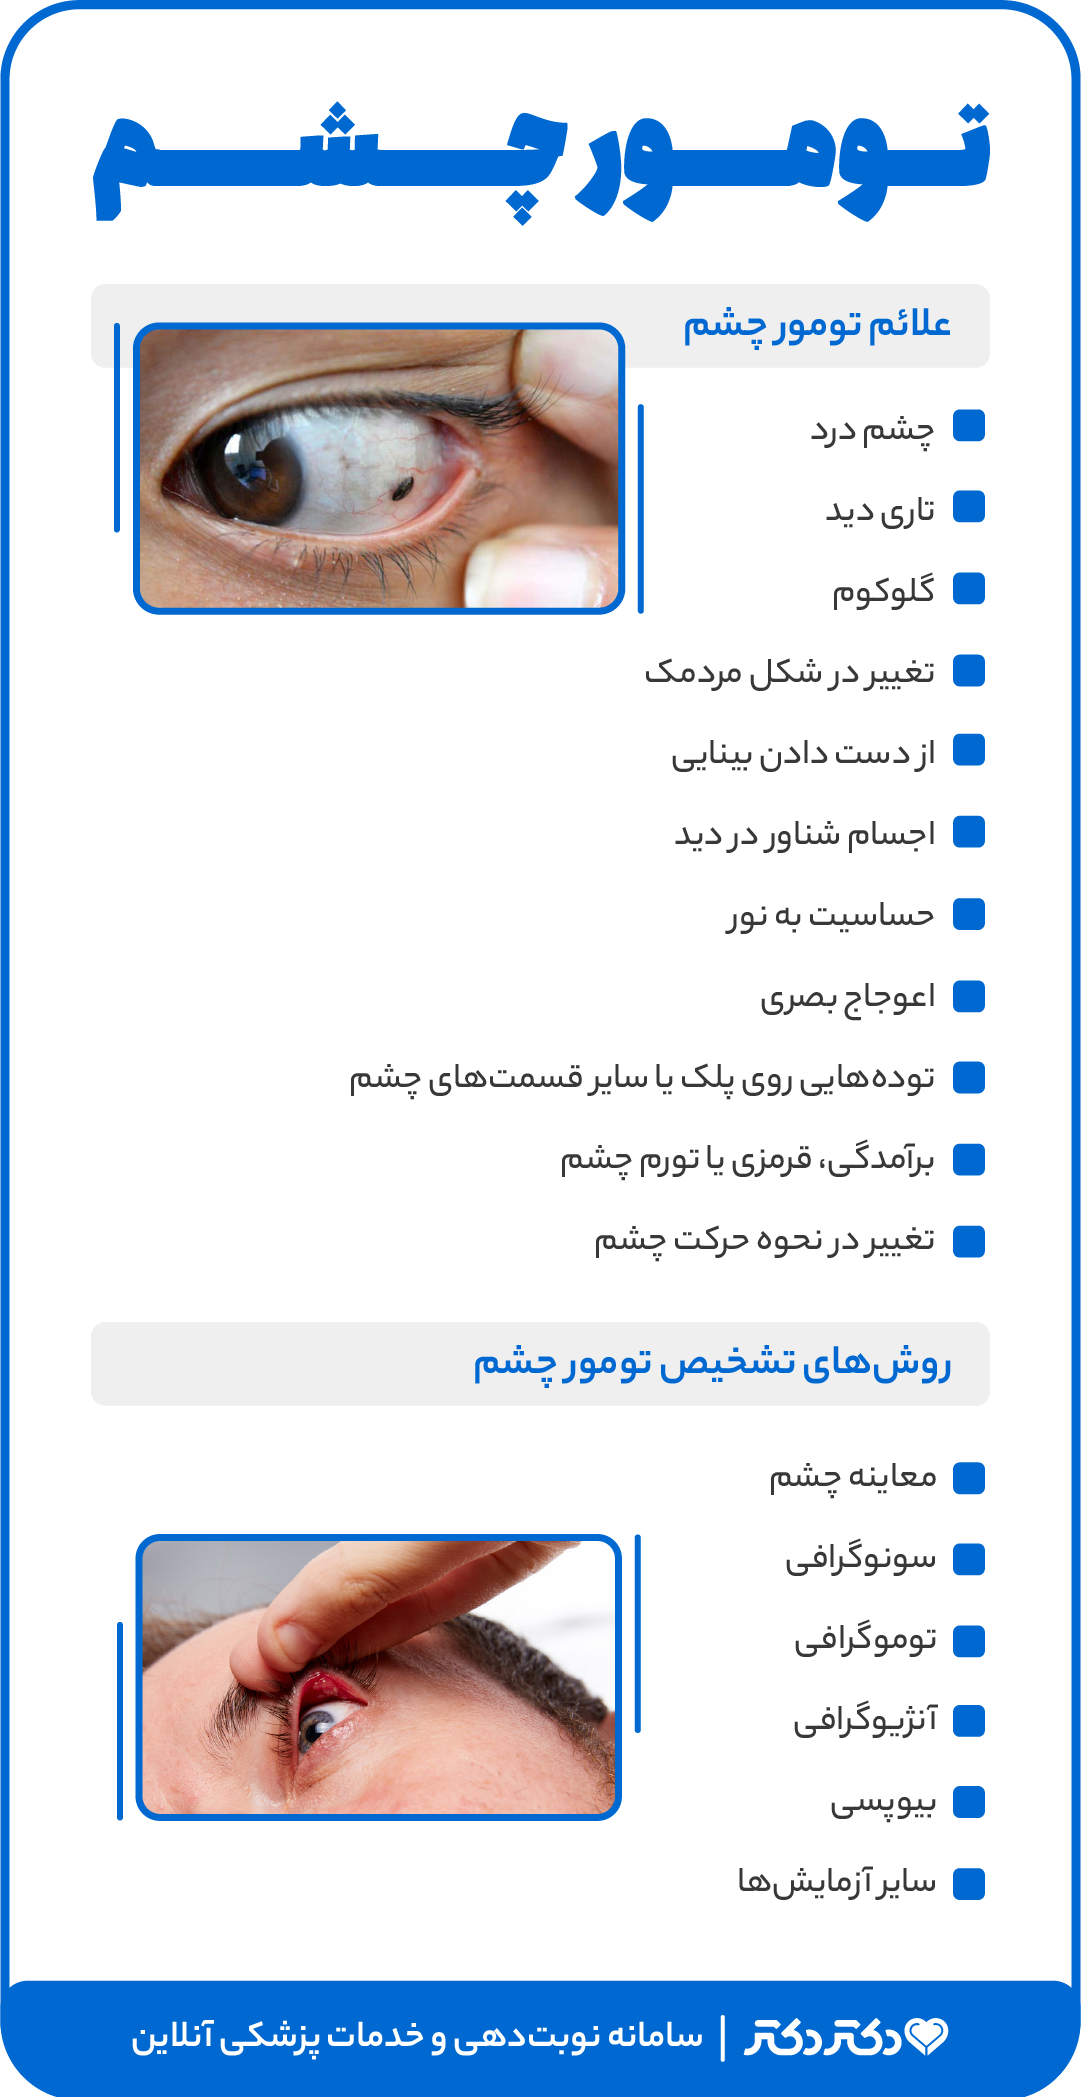 اینفوگرافی تومور چشم